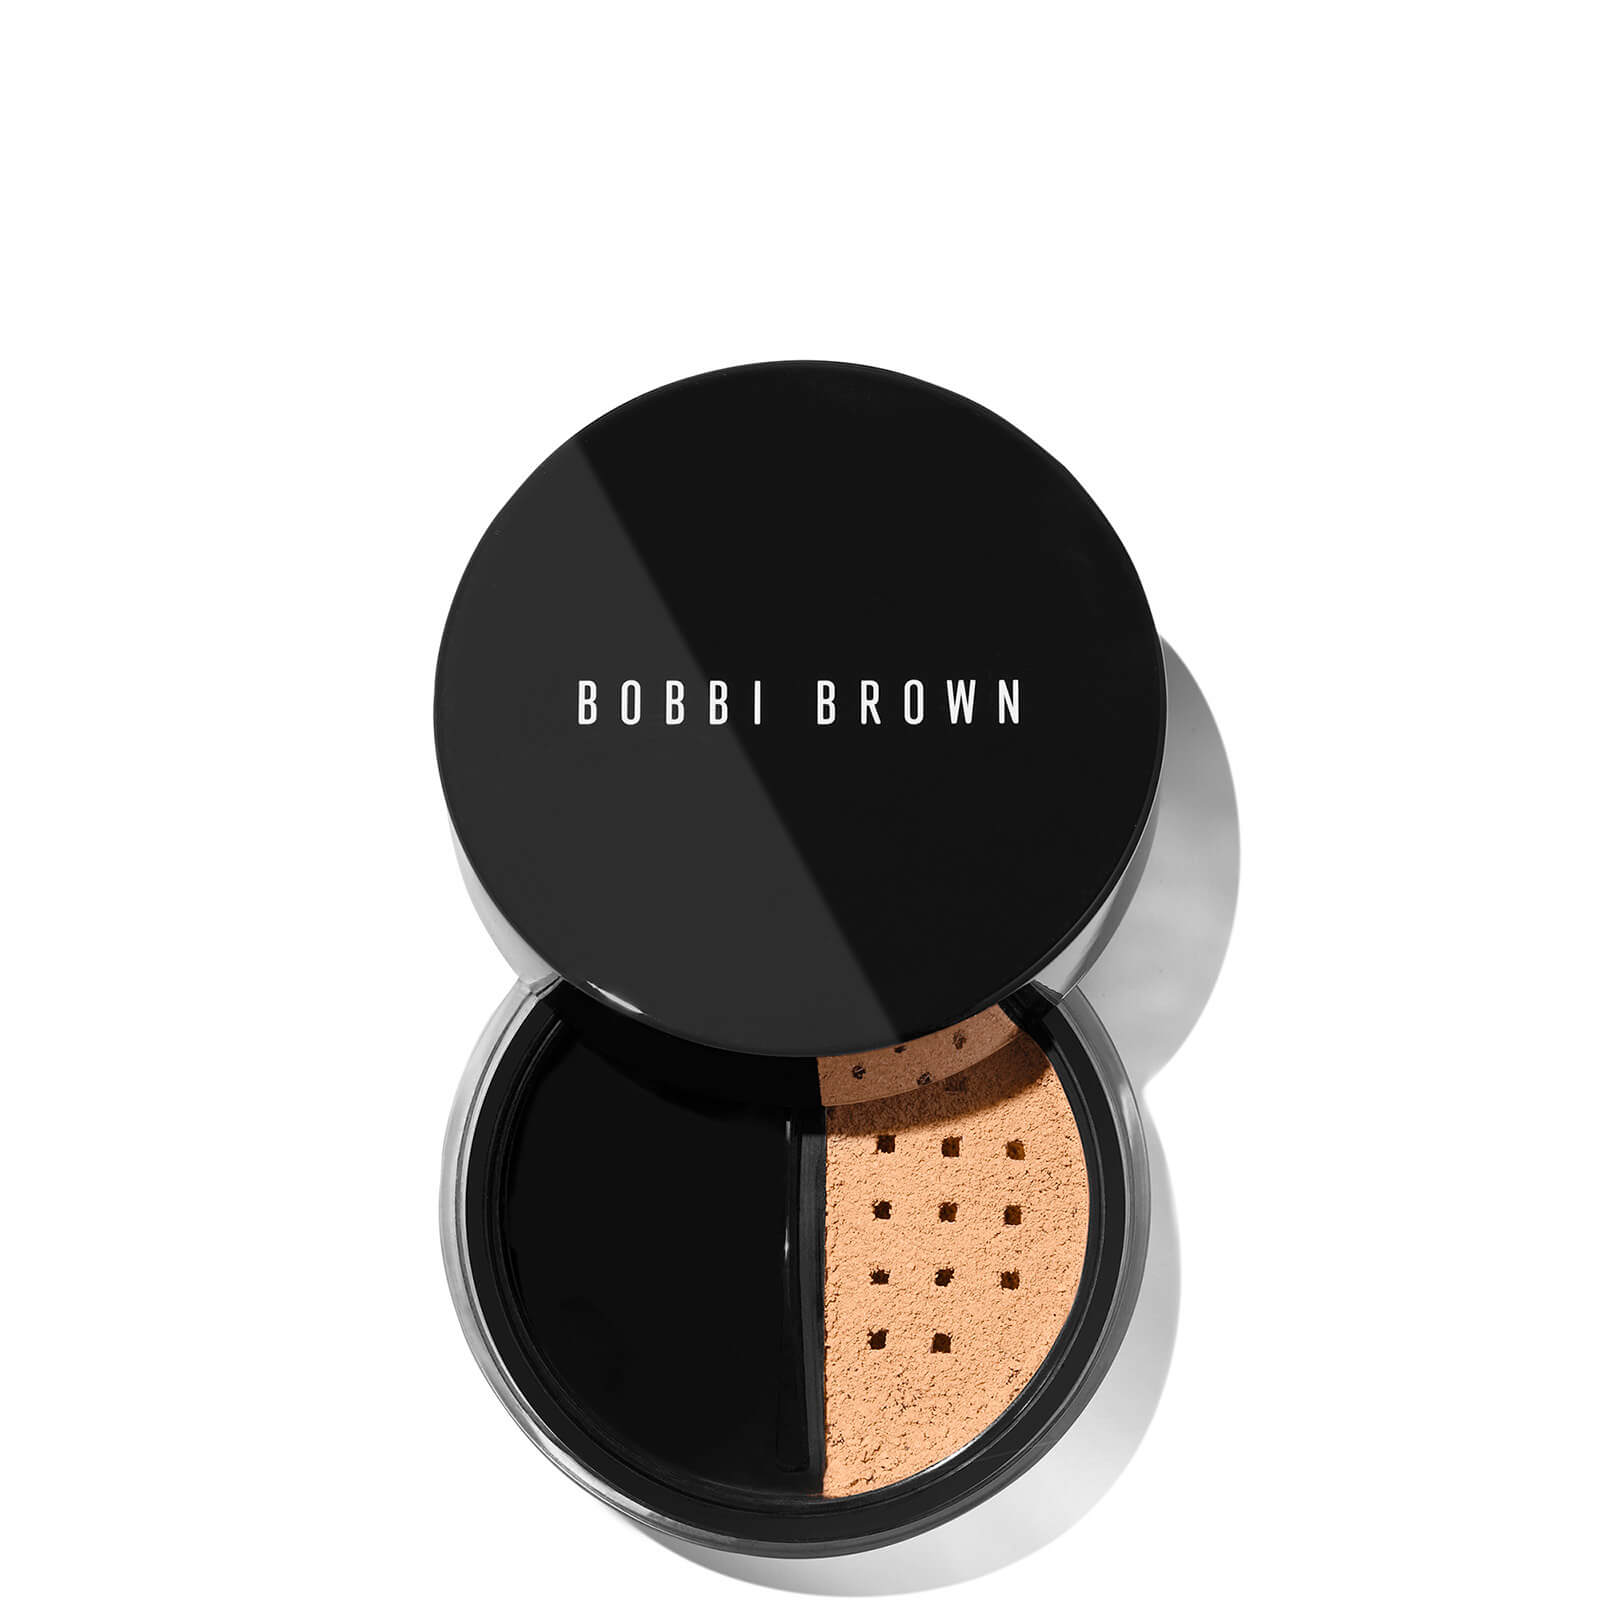 Bobbi Brown Loose Powder 12g (Various Shades) - Warm Natural